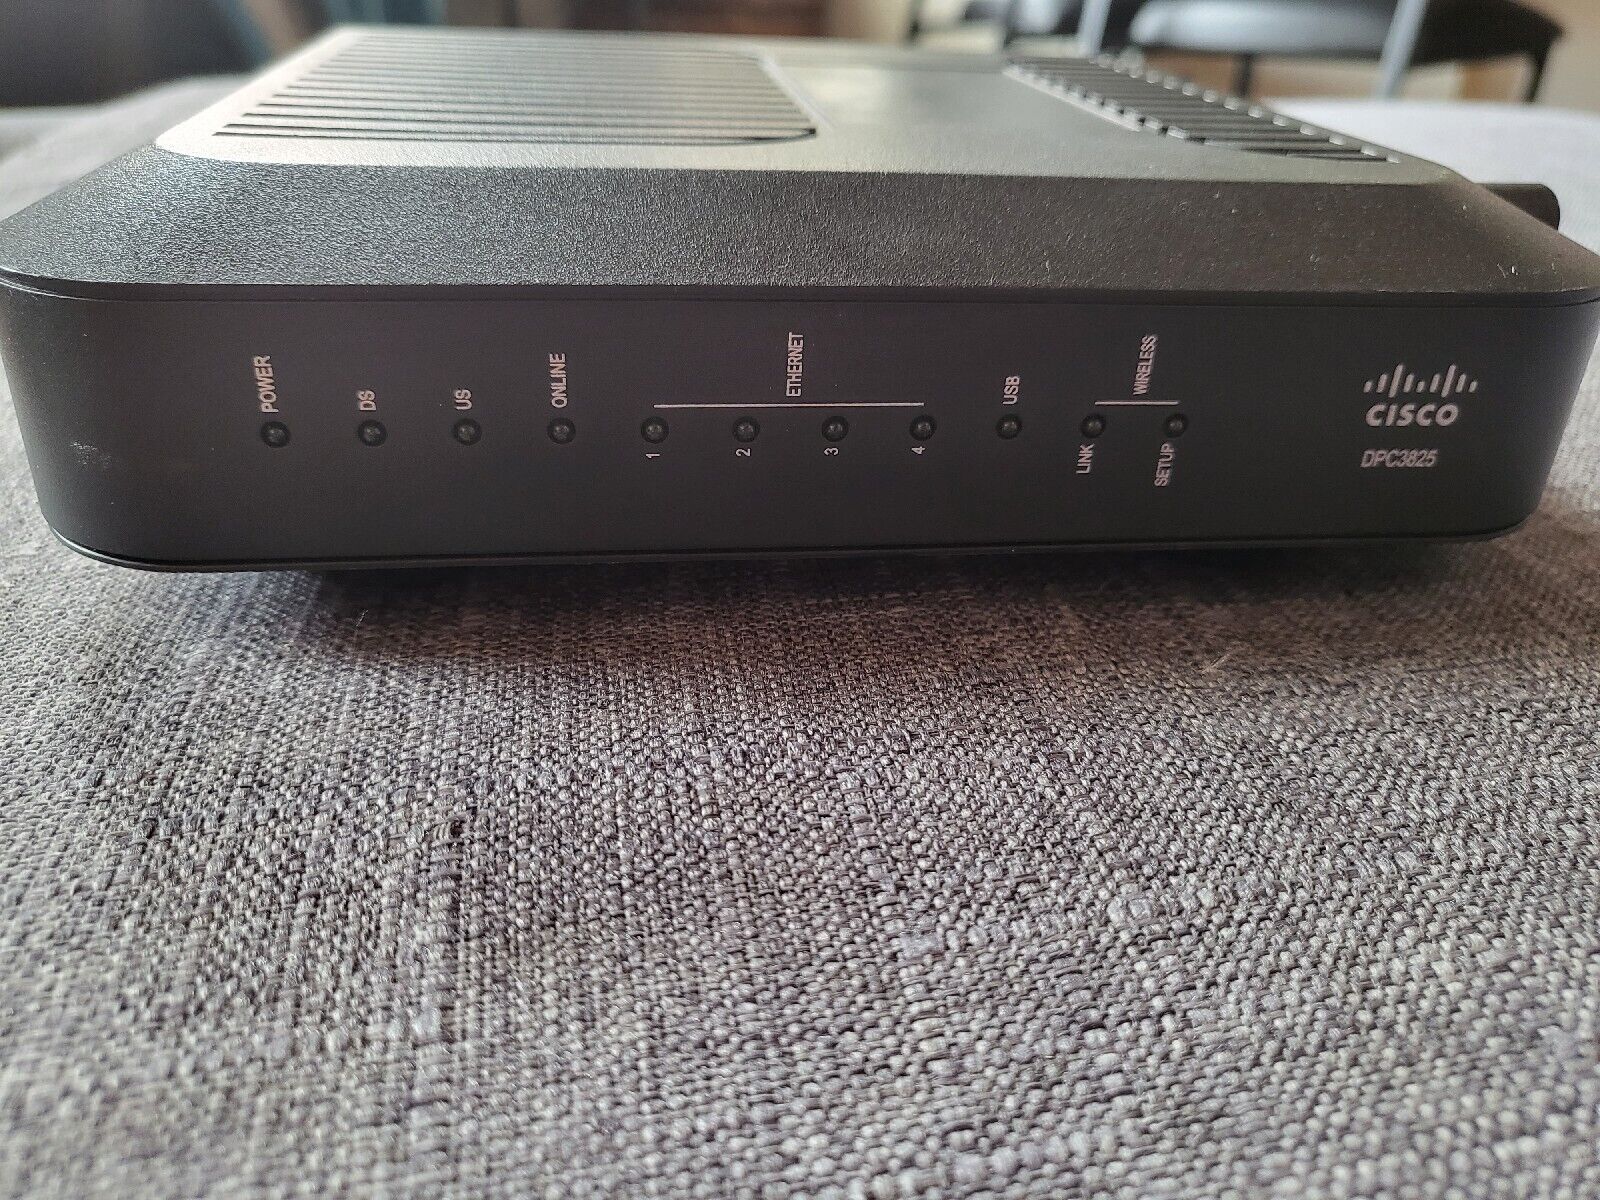 Cisco DPC3825 4 Port DOCSIS 3.0 Gateway Wireless Router